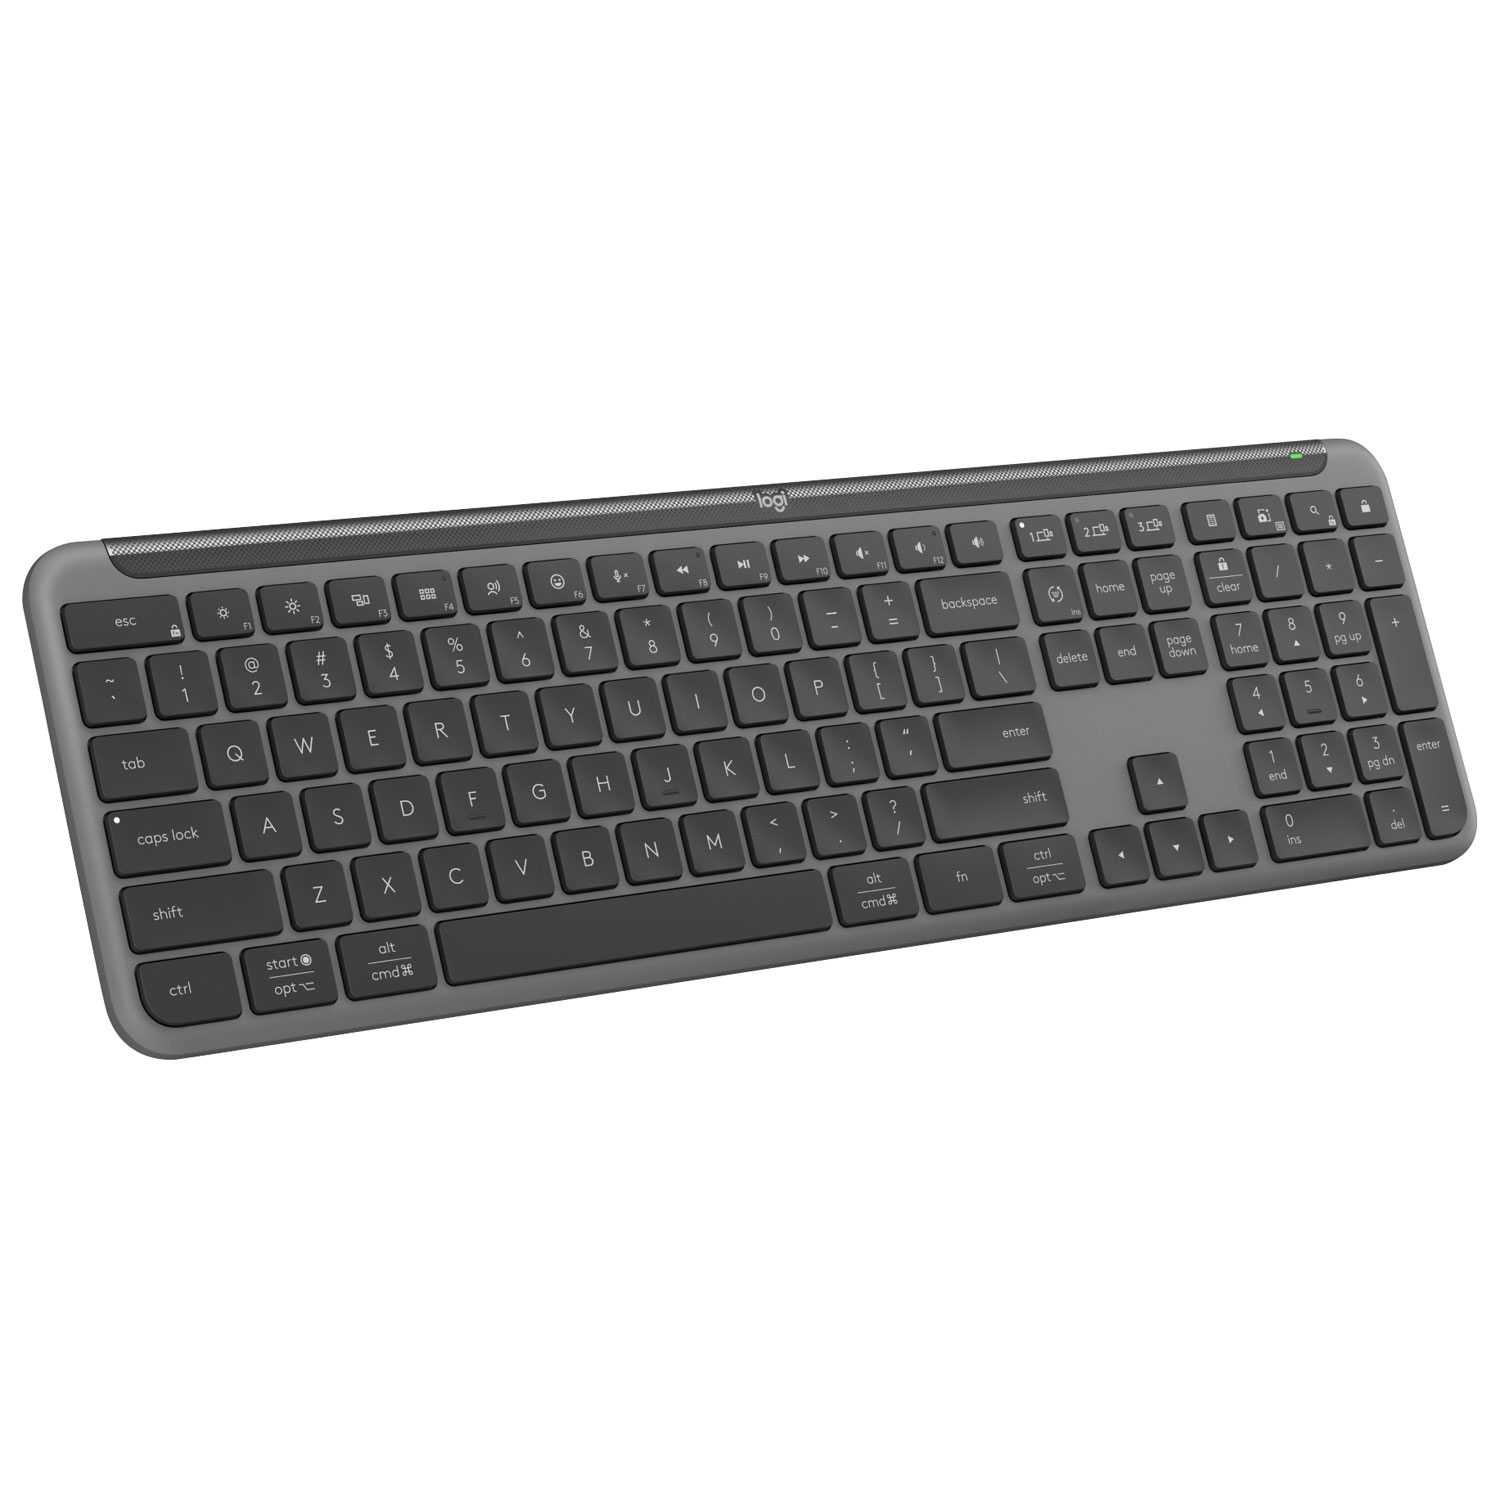 Logitech K950 Signature Slim Wireless Full-Size Keyboard - Graphite - English